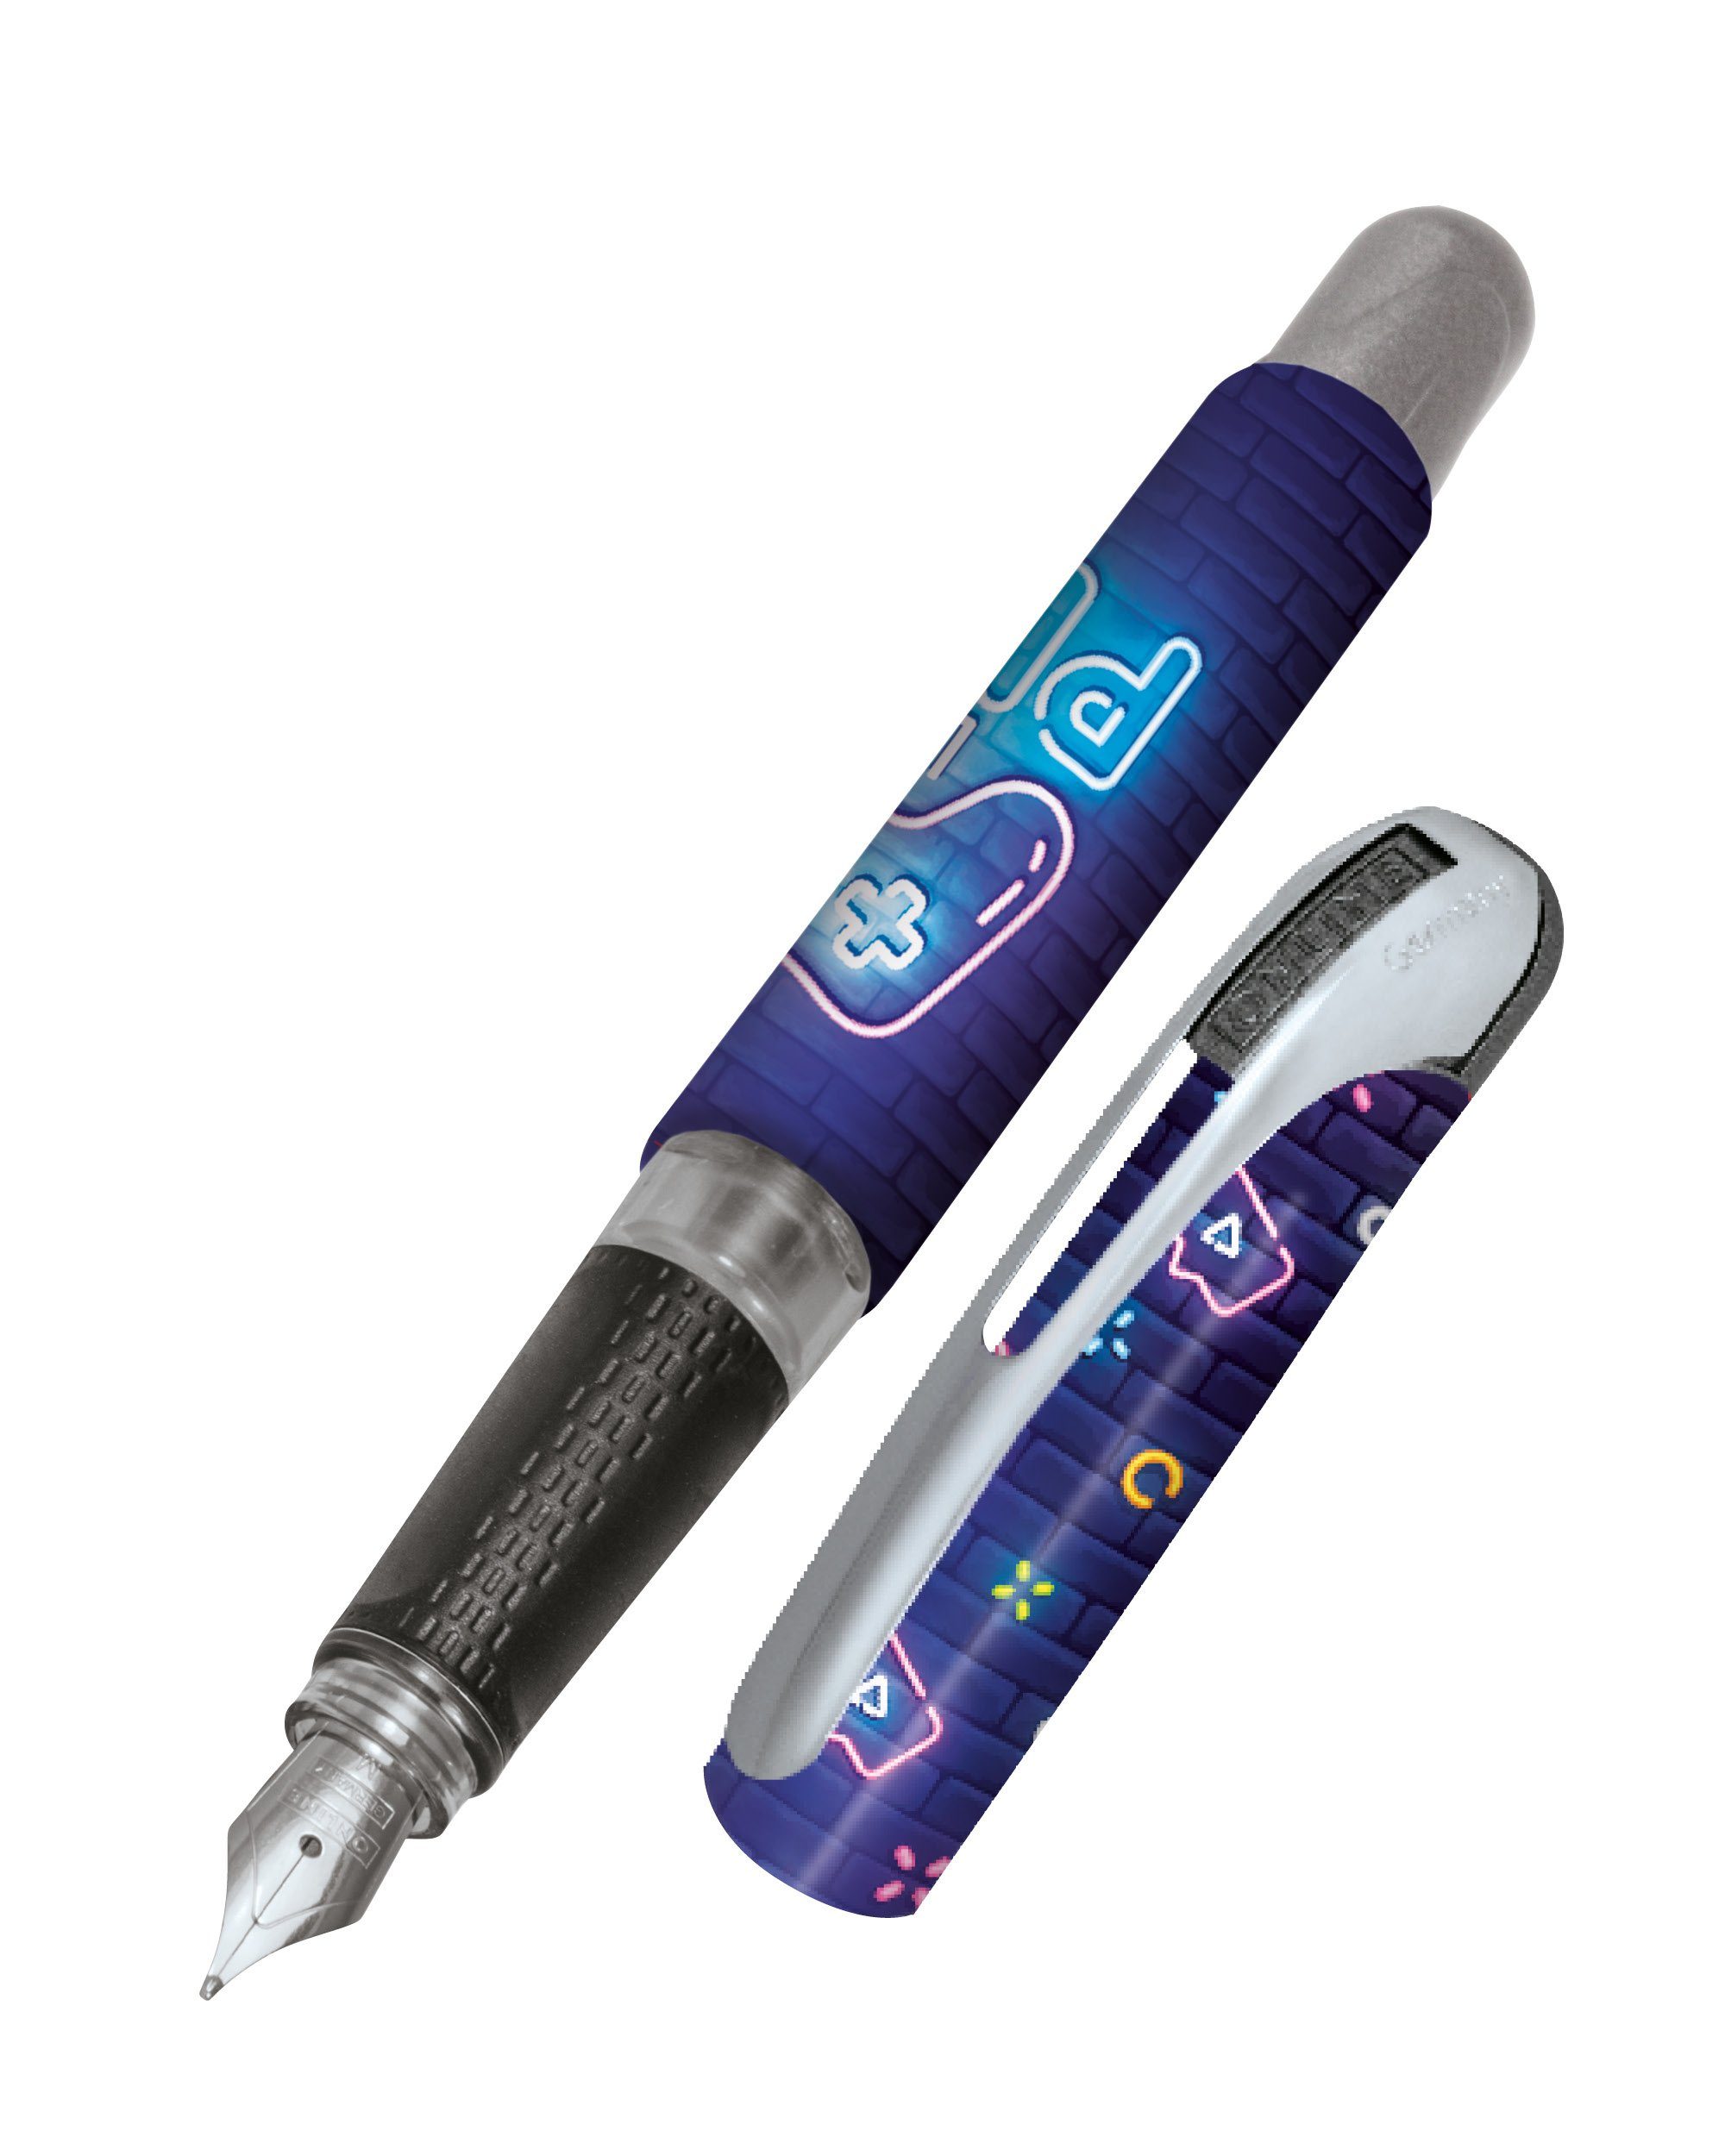 Online Pen Füller College Füllhalter, ergonomisch, ideal für die Schule, hergestellt in Deutschland